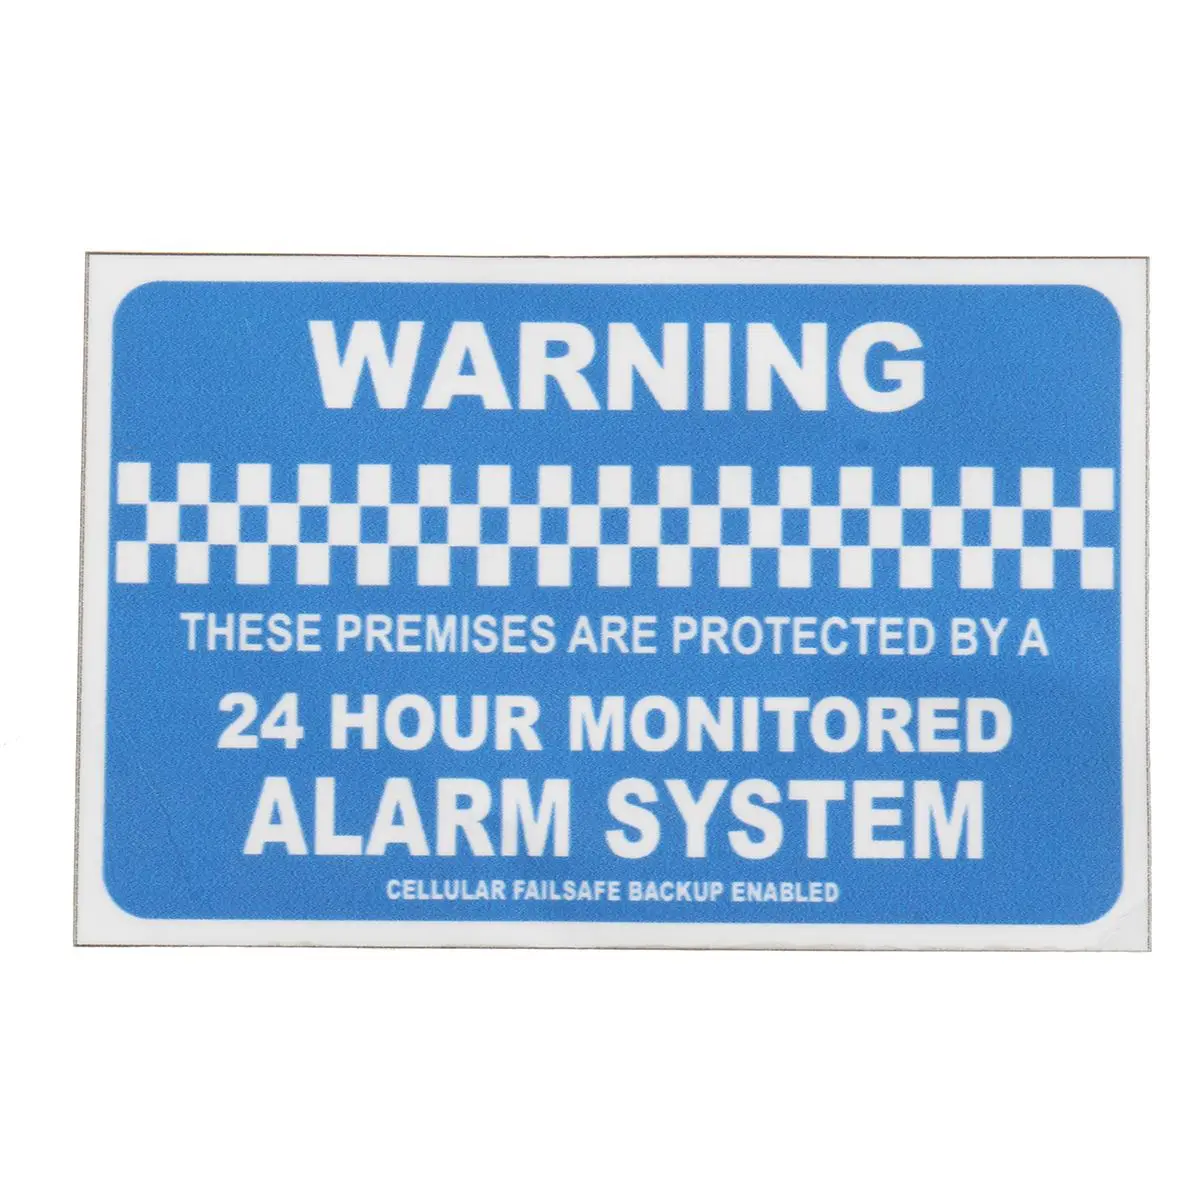 Safurance мониторинга сигнализации homesecurity Предупреждение Стикеры виниловые знак наклейка автомобиля дома или офиса